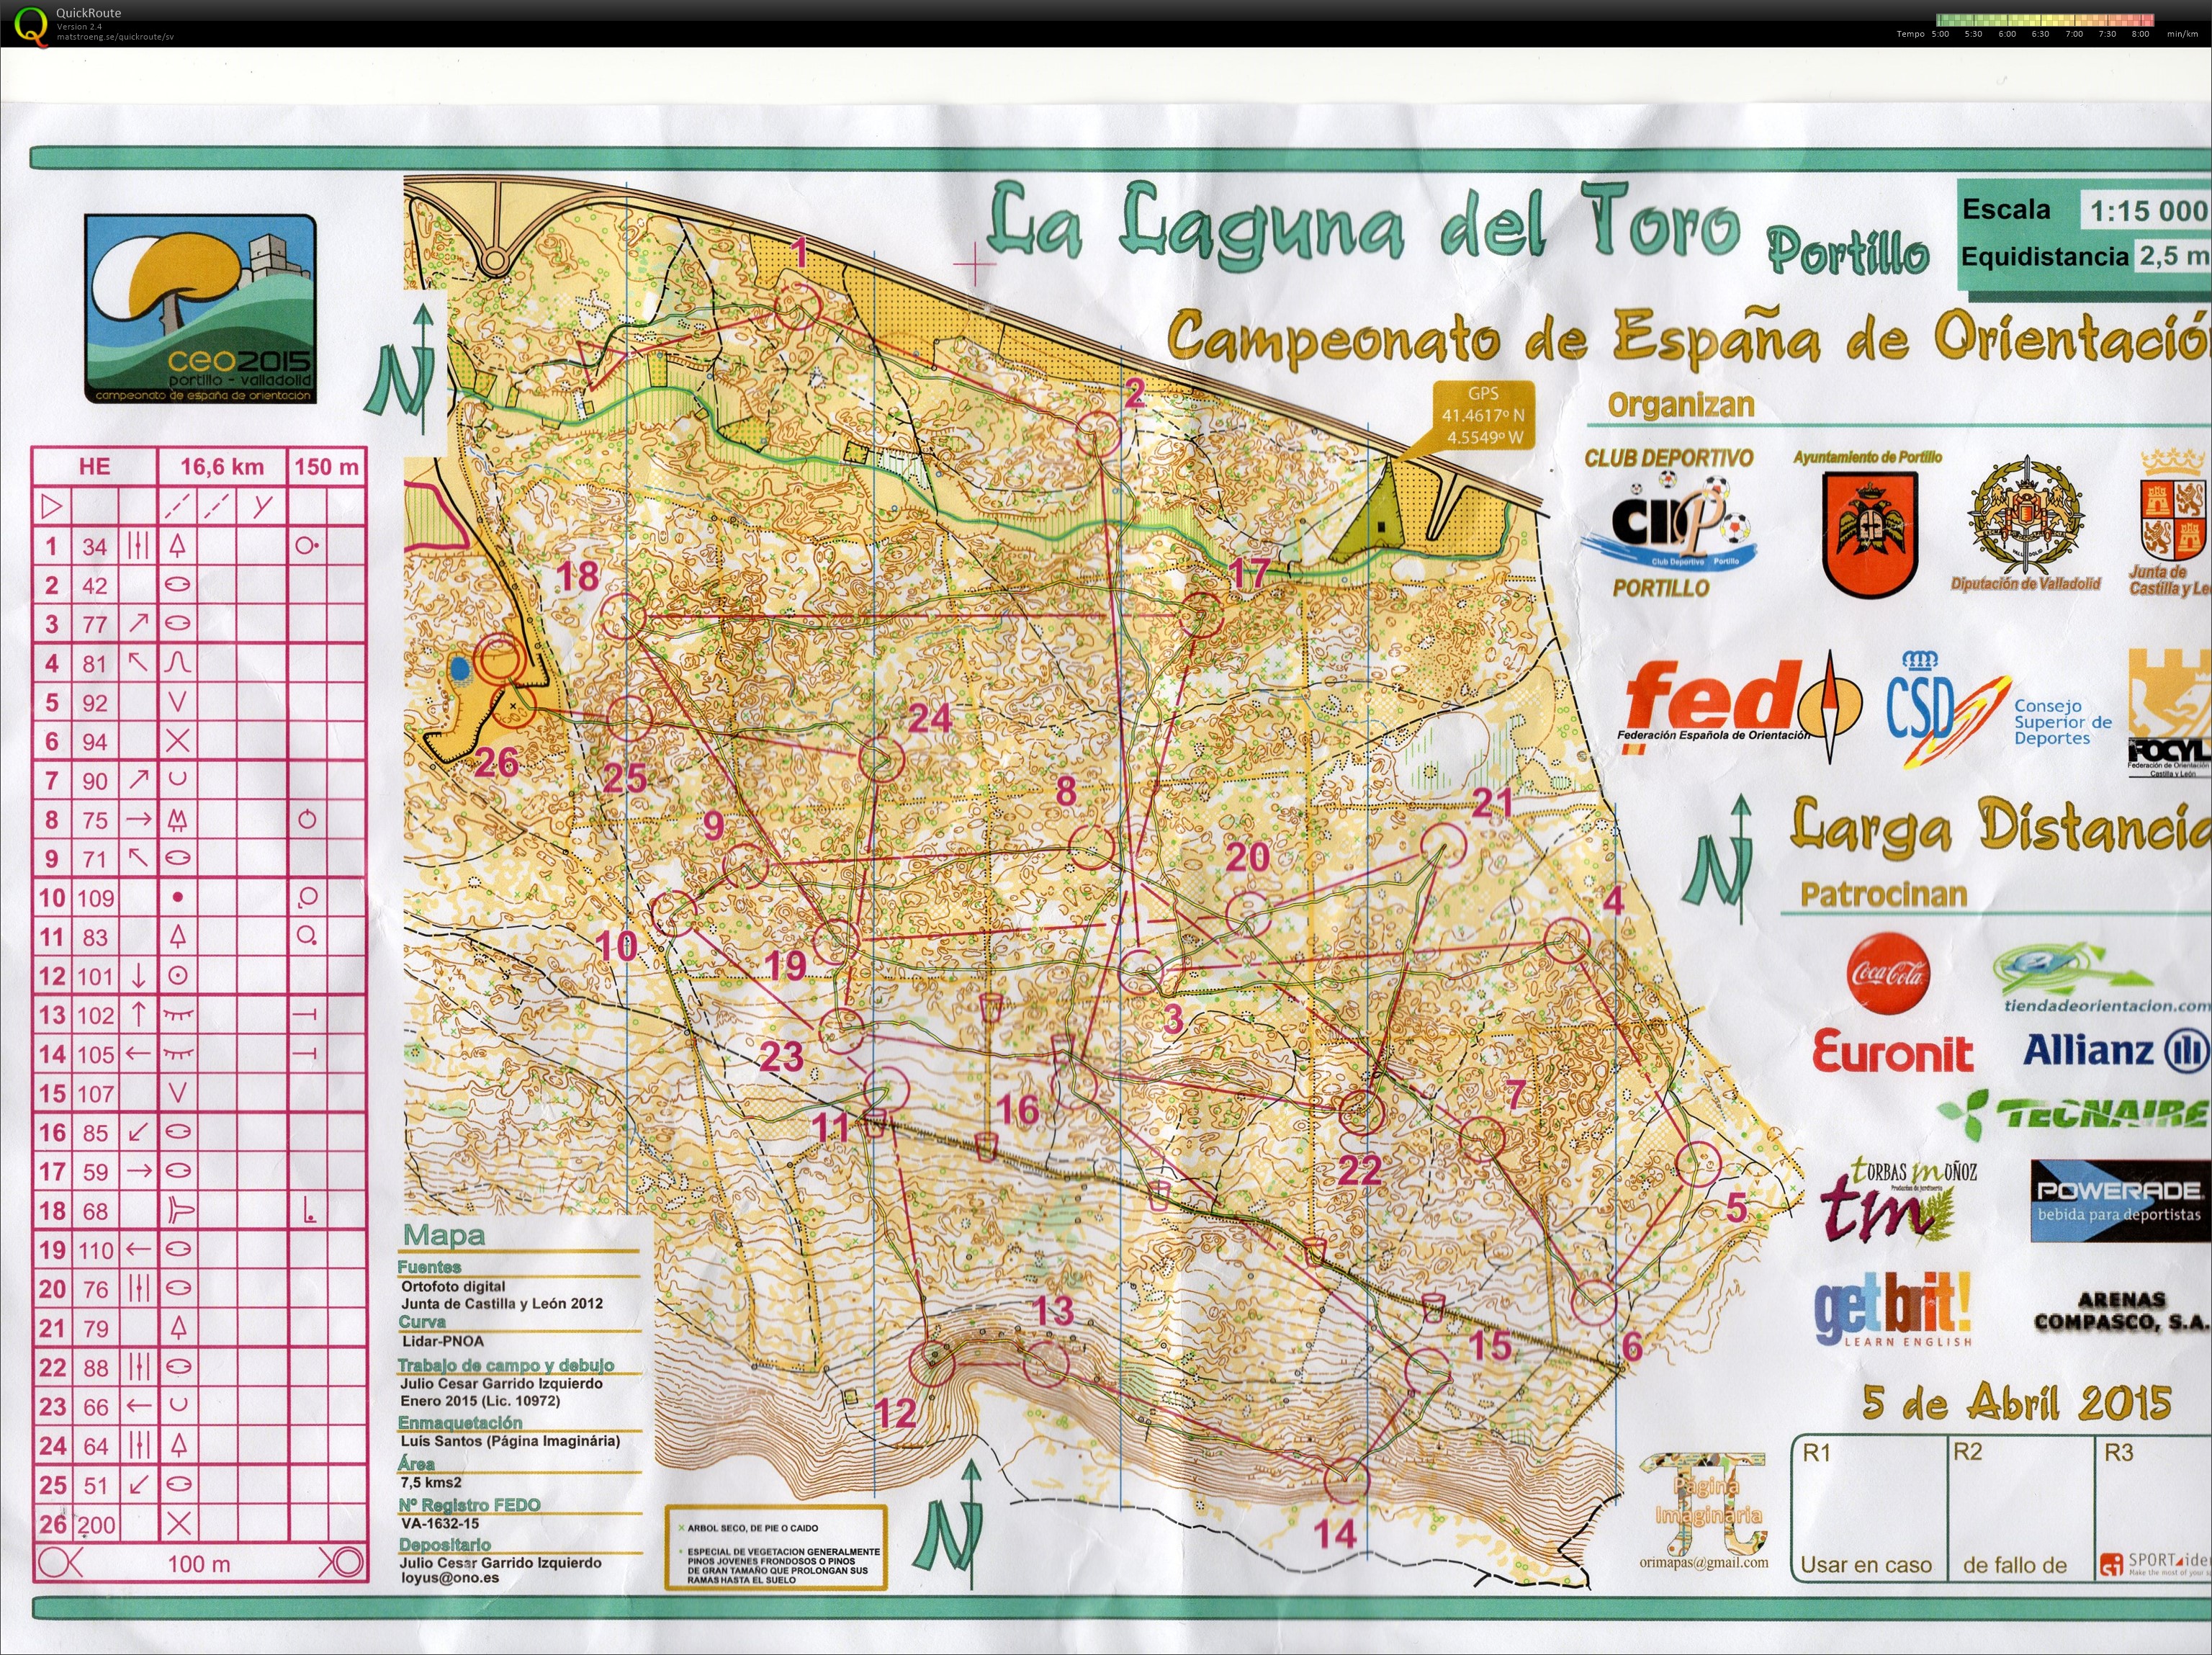 Campeonato de España de orientación (CEO)- Long (2015-04-05)